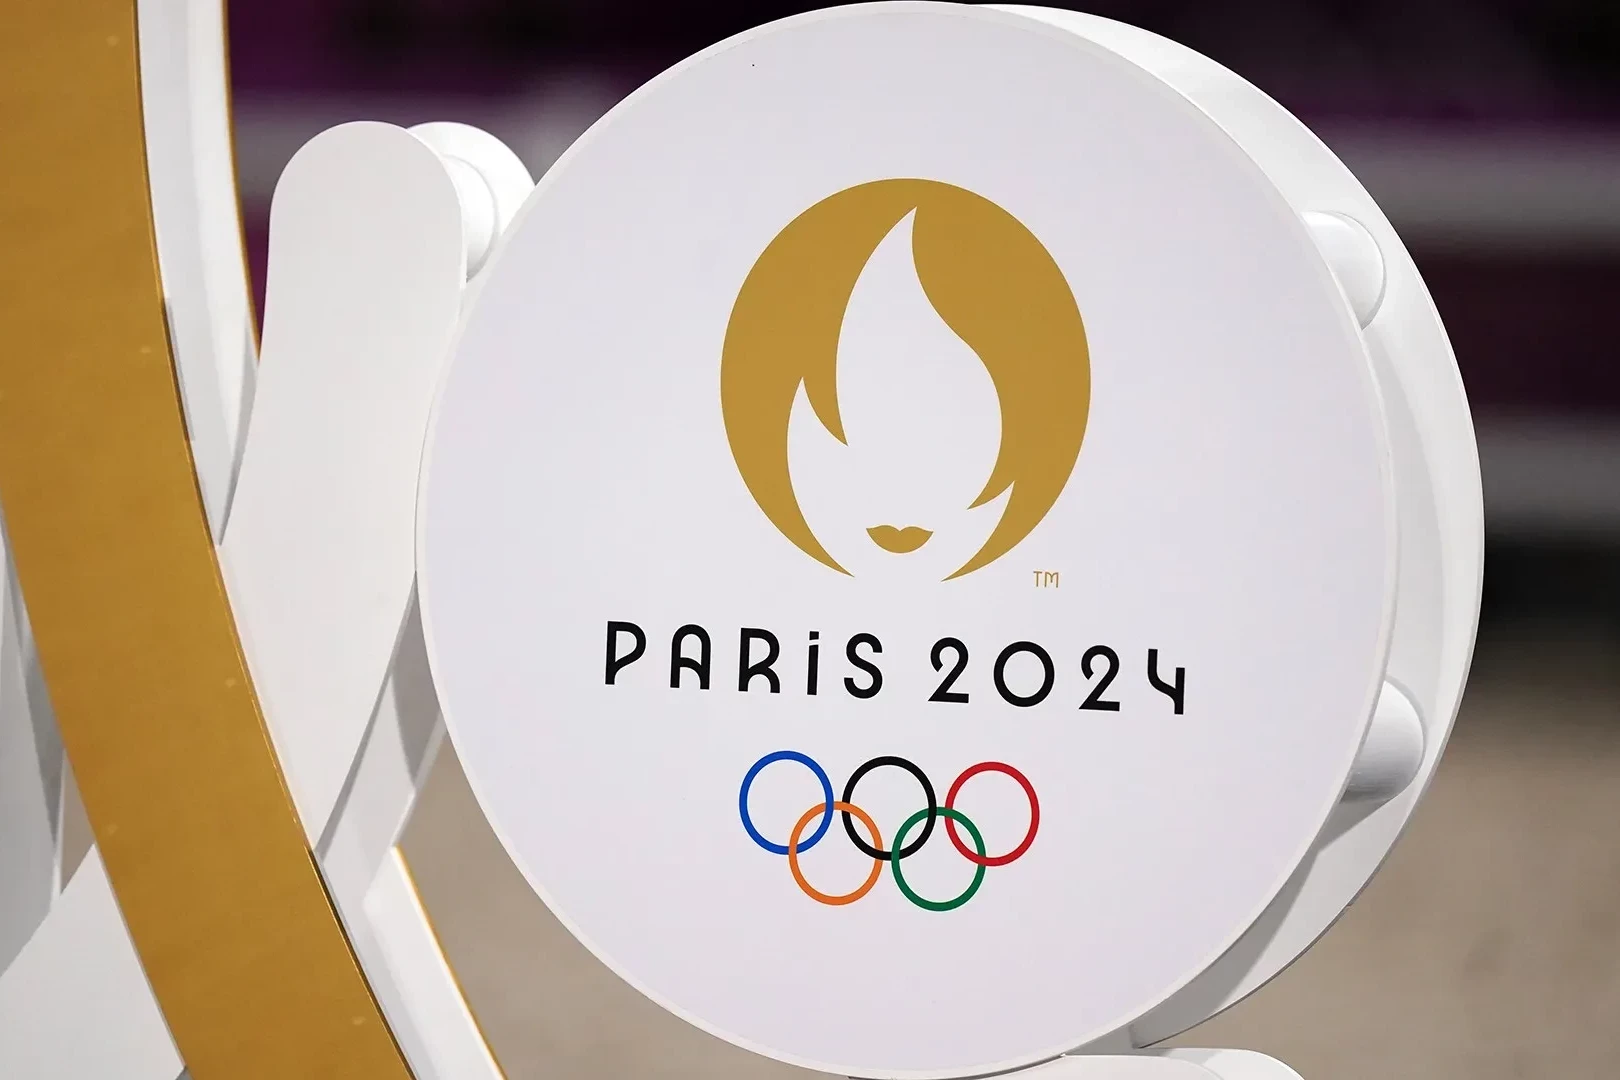 Parisə doğru: Azərbaycan üçün Olimpiadaların 20-cisi - TƏHLİL